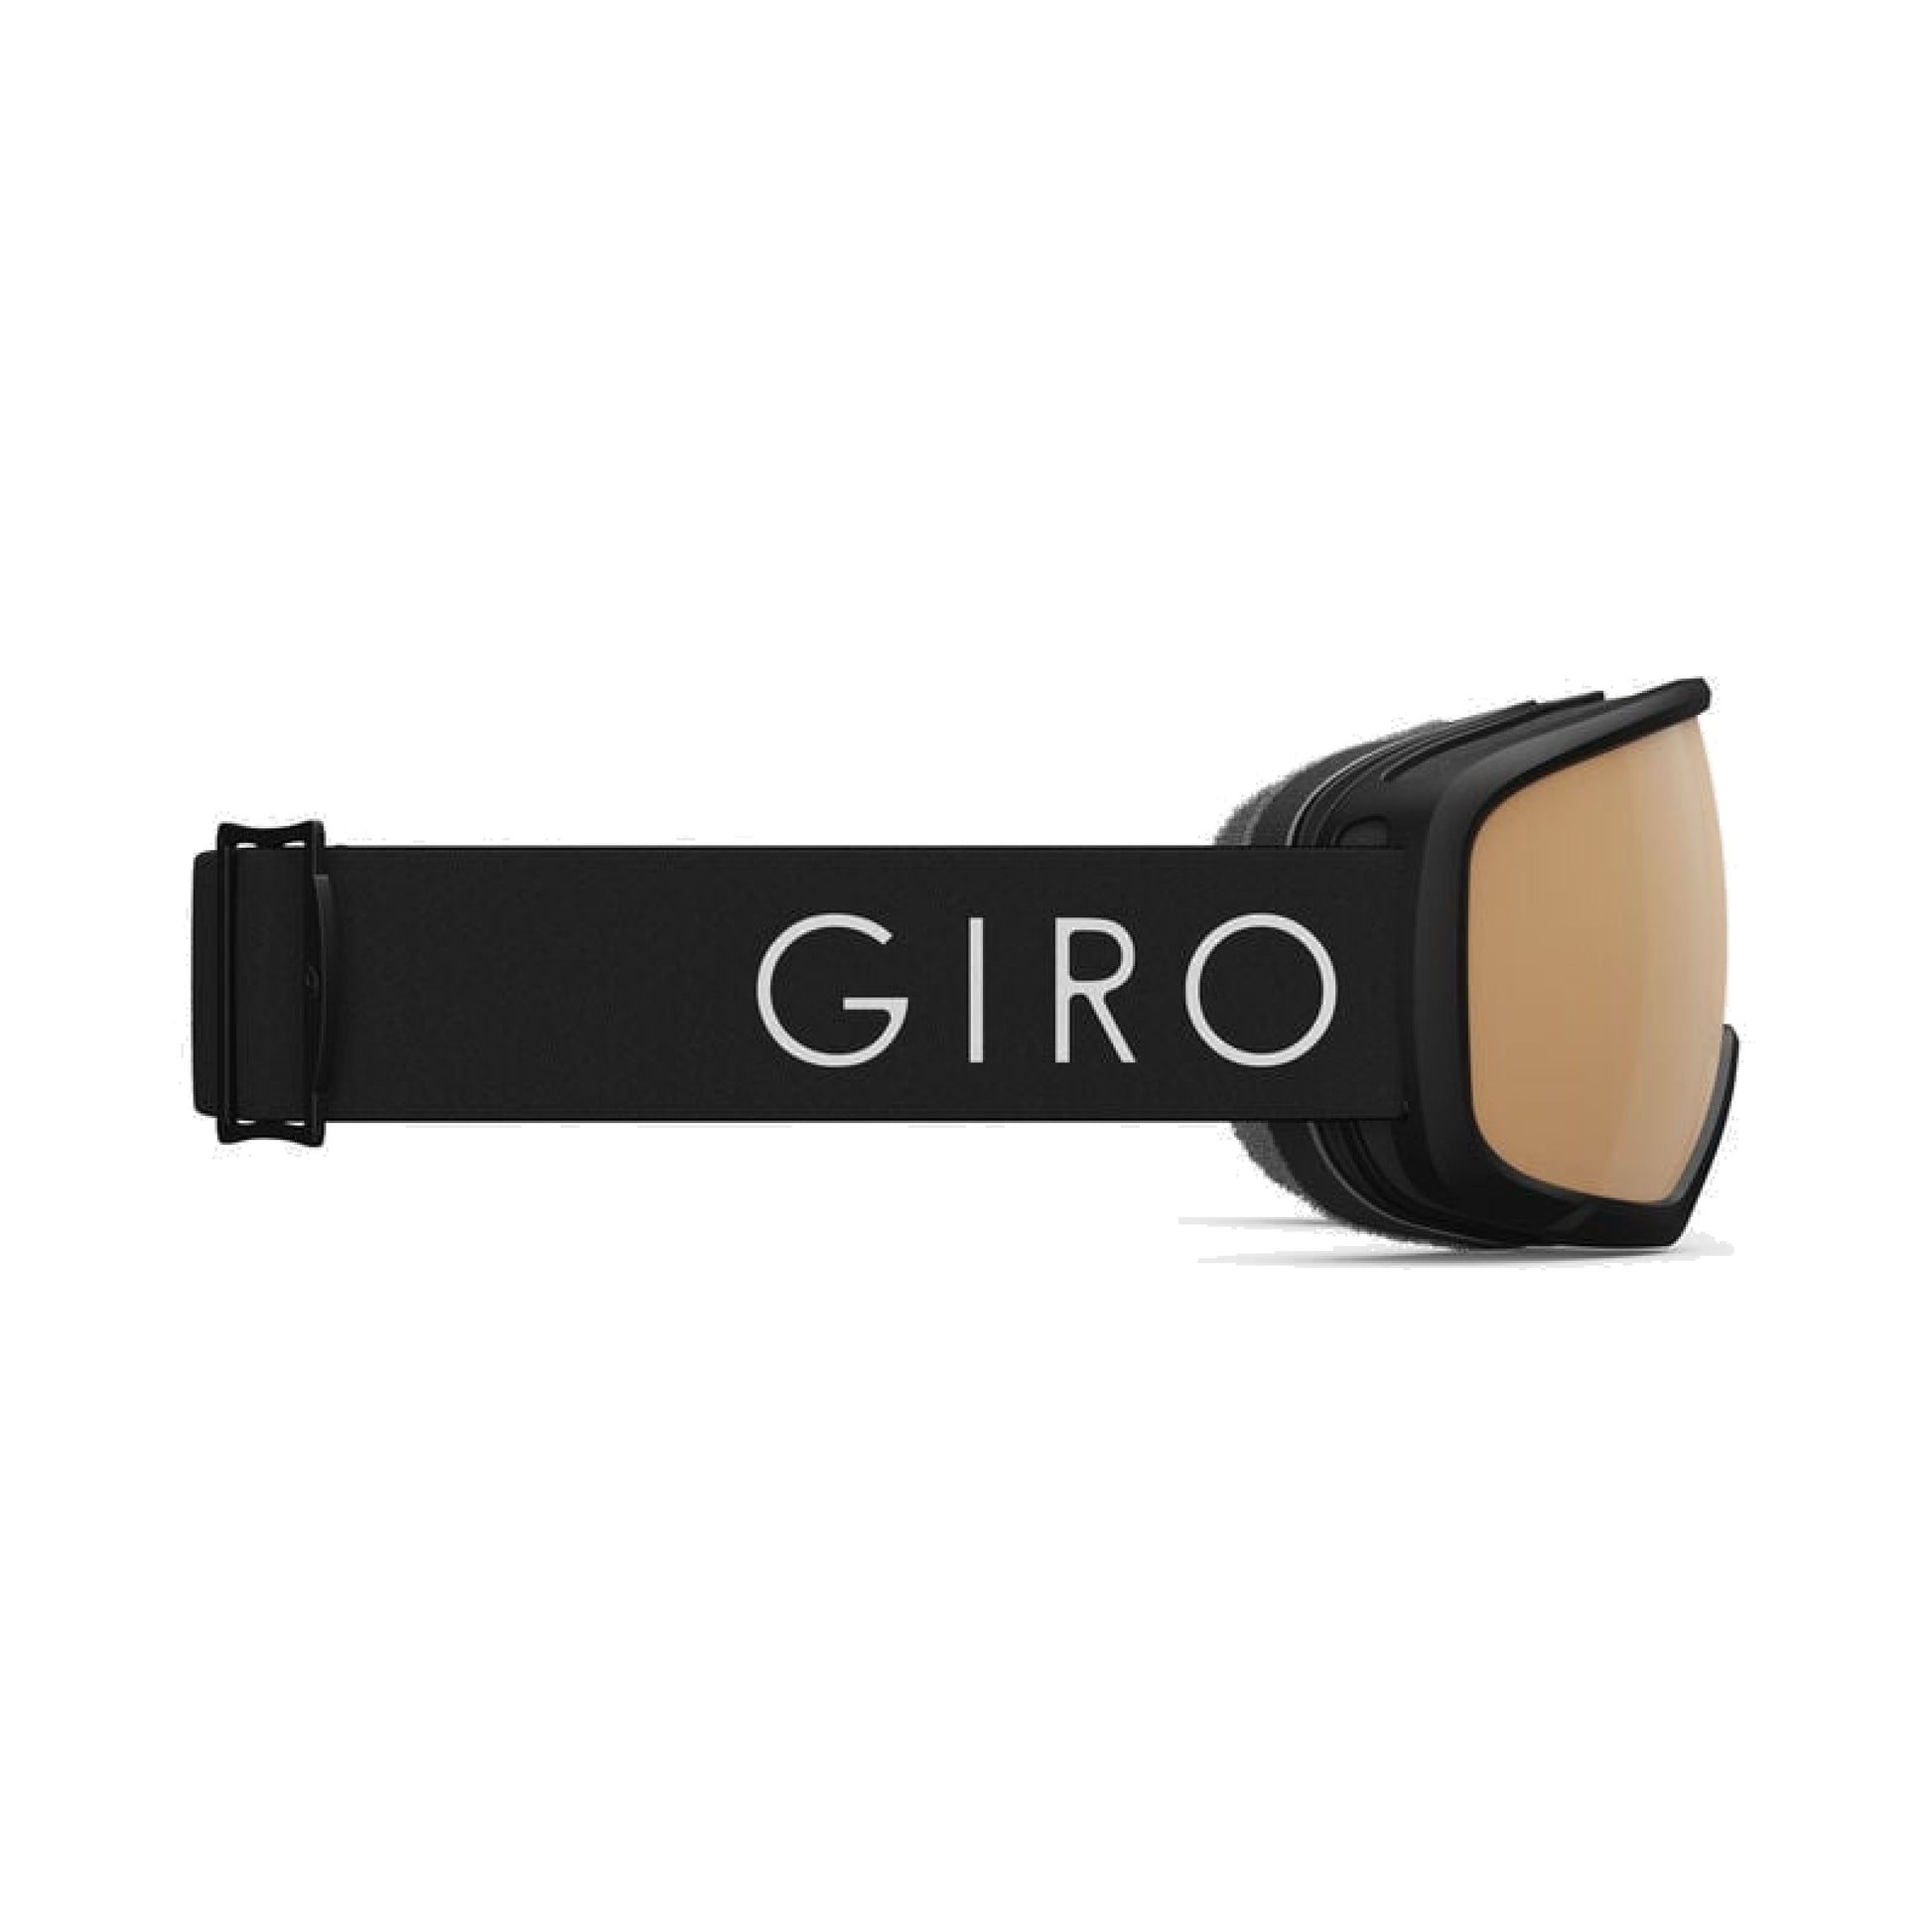 Giro Women's Millie Snow Goggles Black Core Light / Vivid Copper Snow Goggles